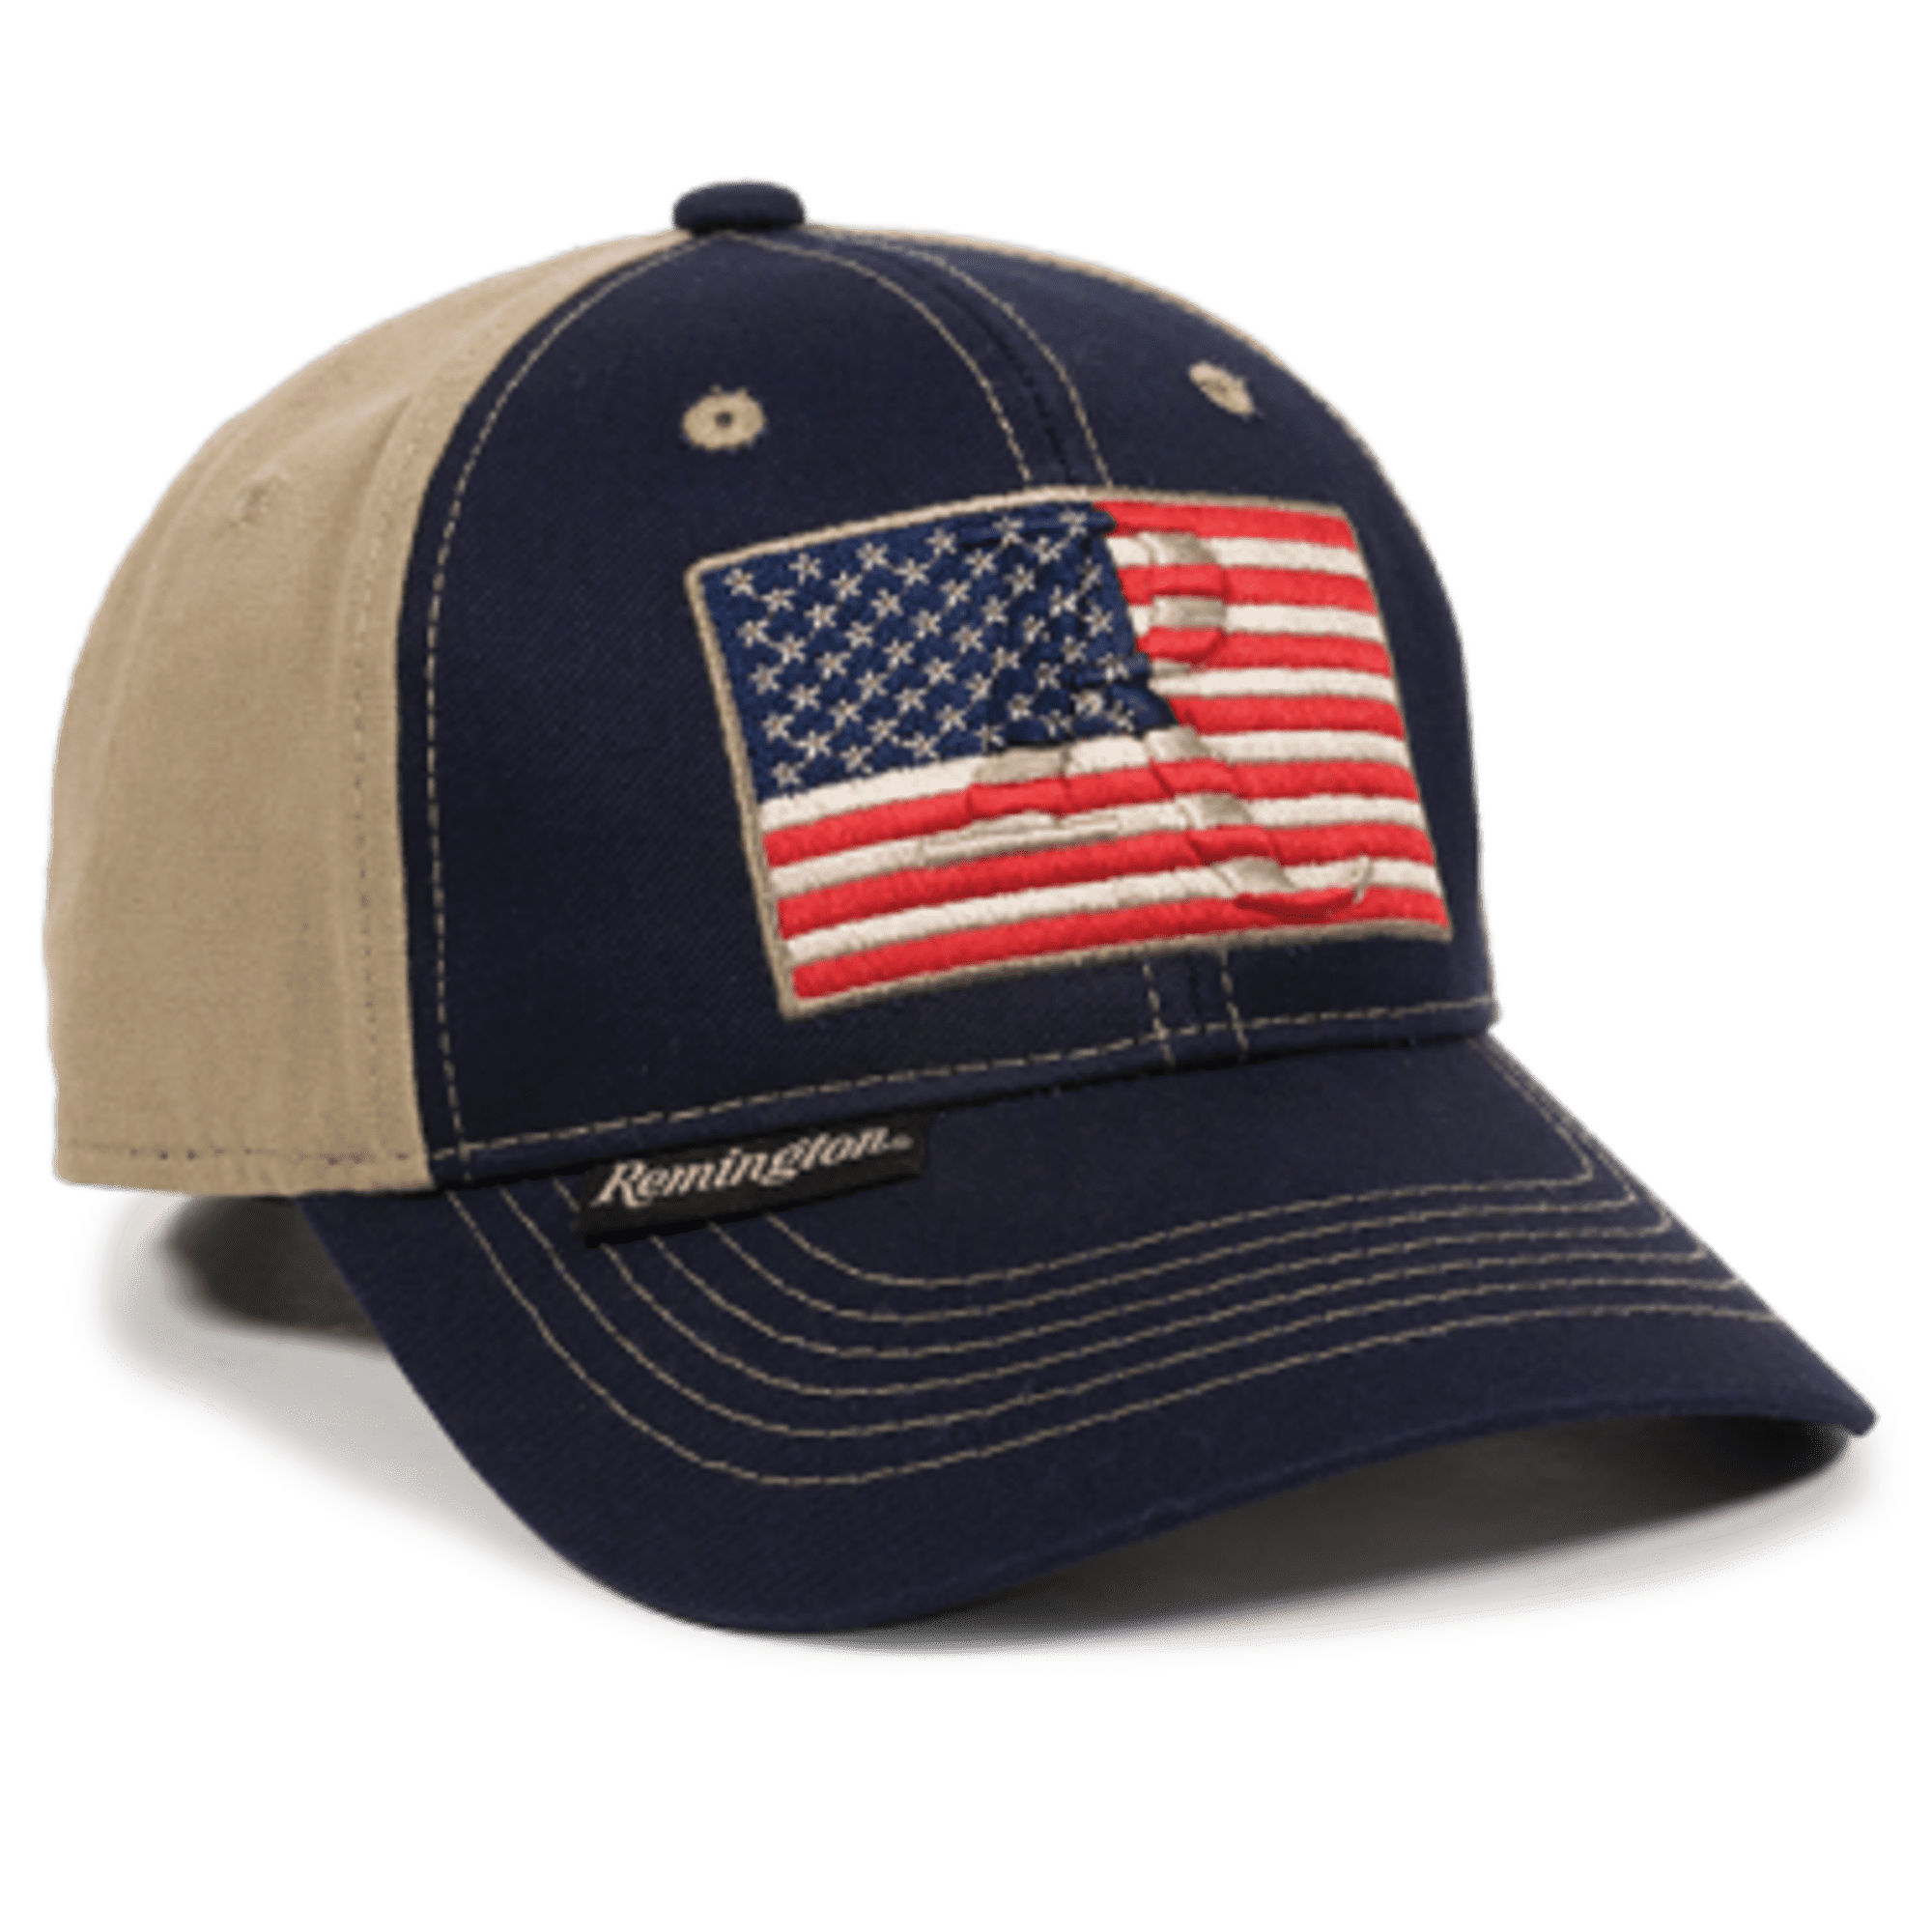 Outdoor Cap - Outdoor Cap Unisex-Adult American Flag, Navy/Khaki, Adult ...